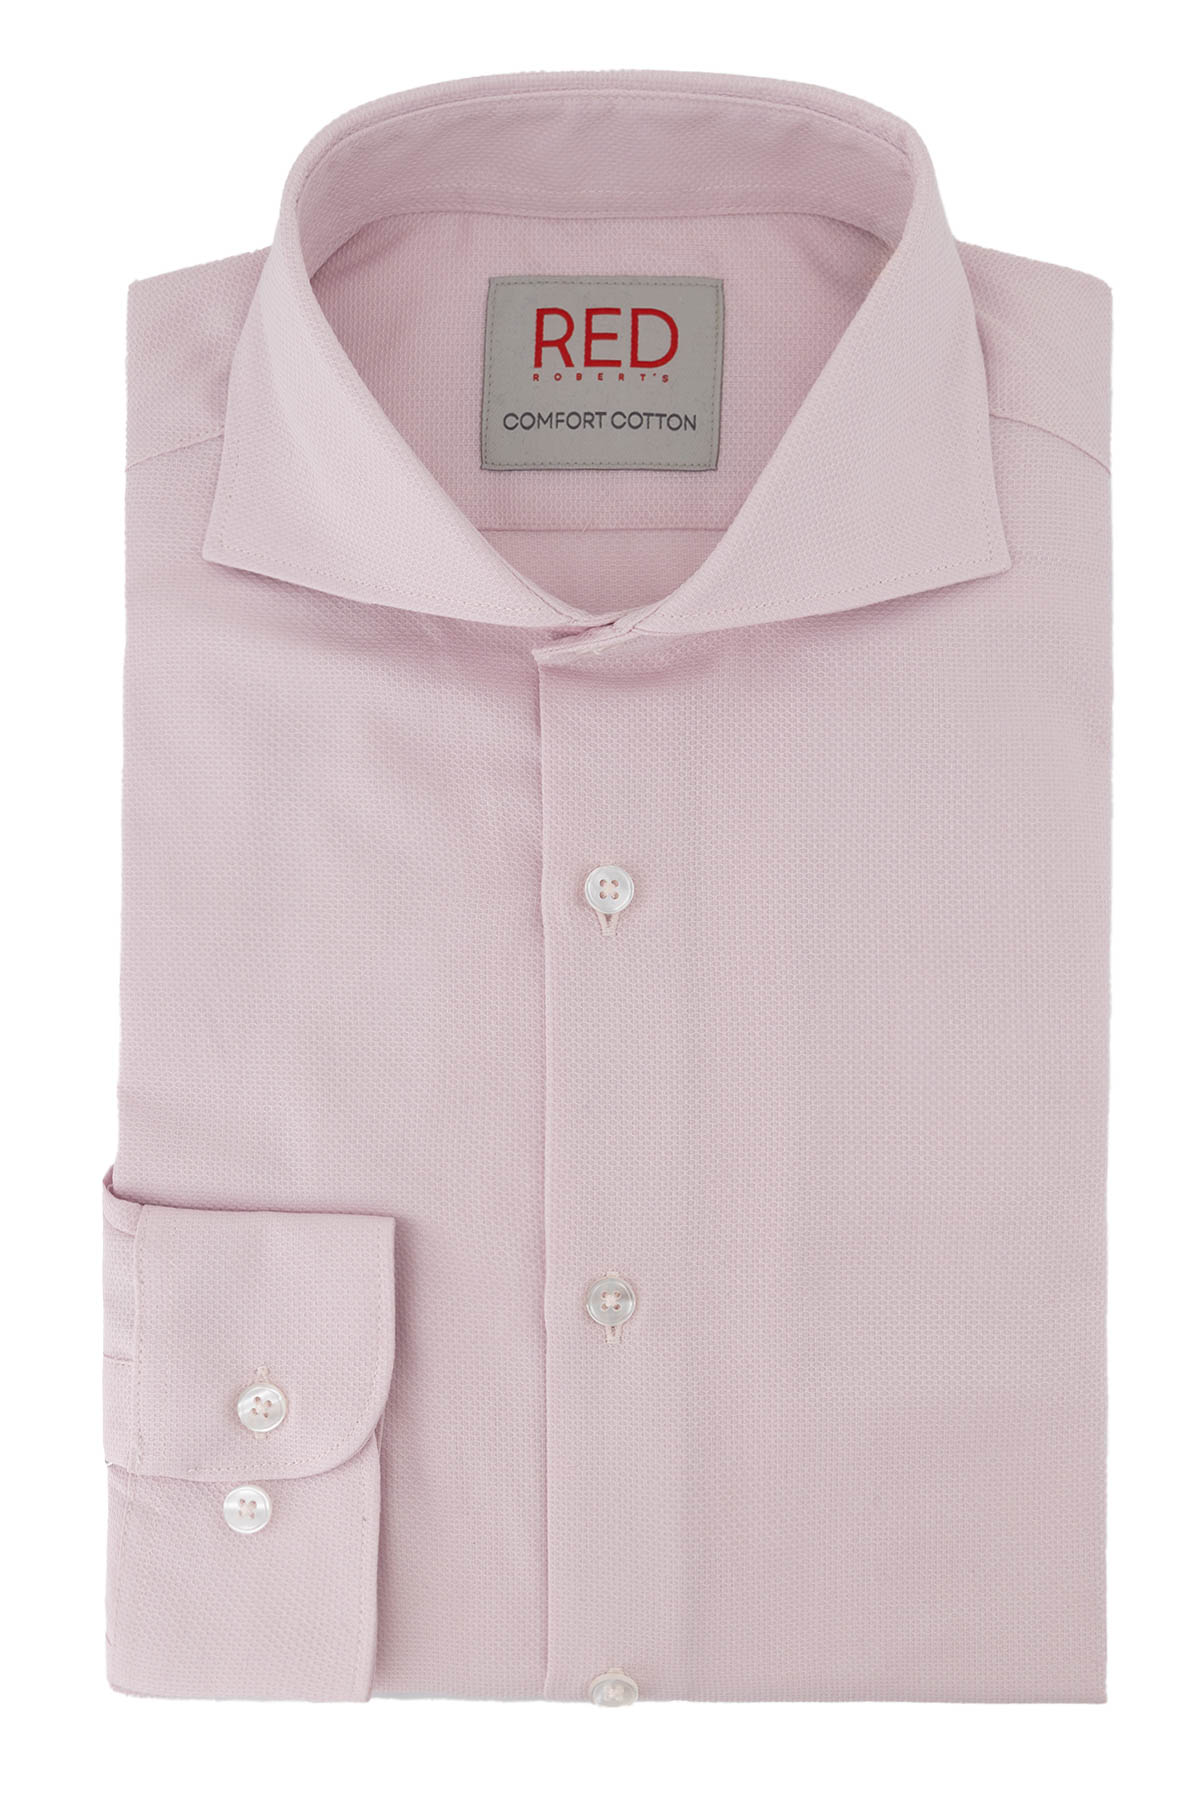 Camisa Vestir Roberts Red Color Rosa Claro Slim Fit